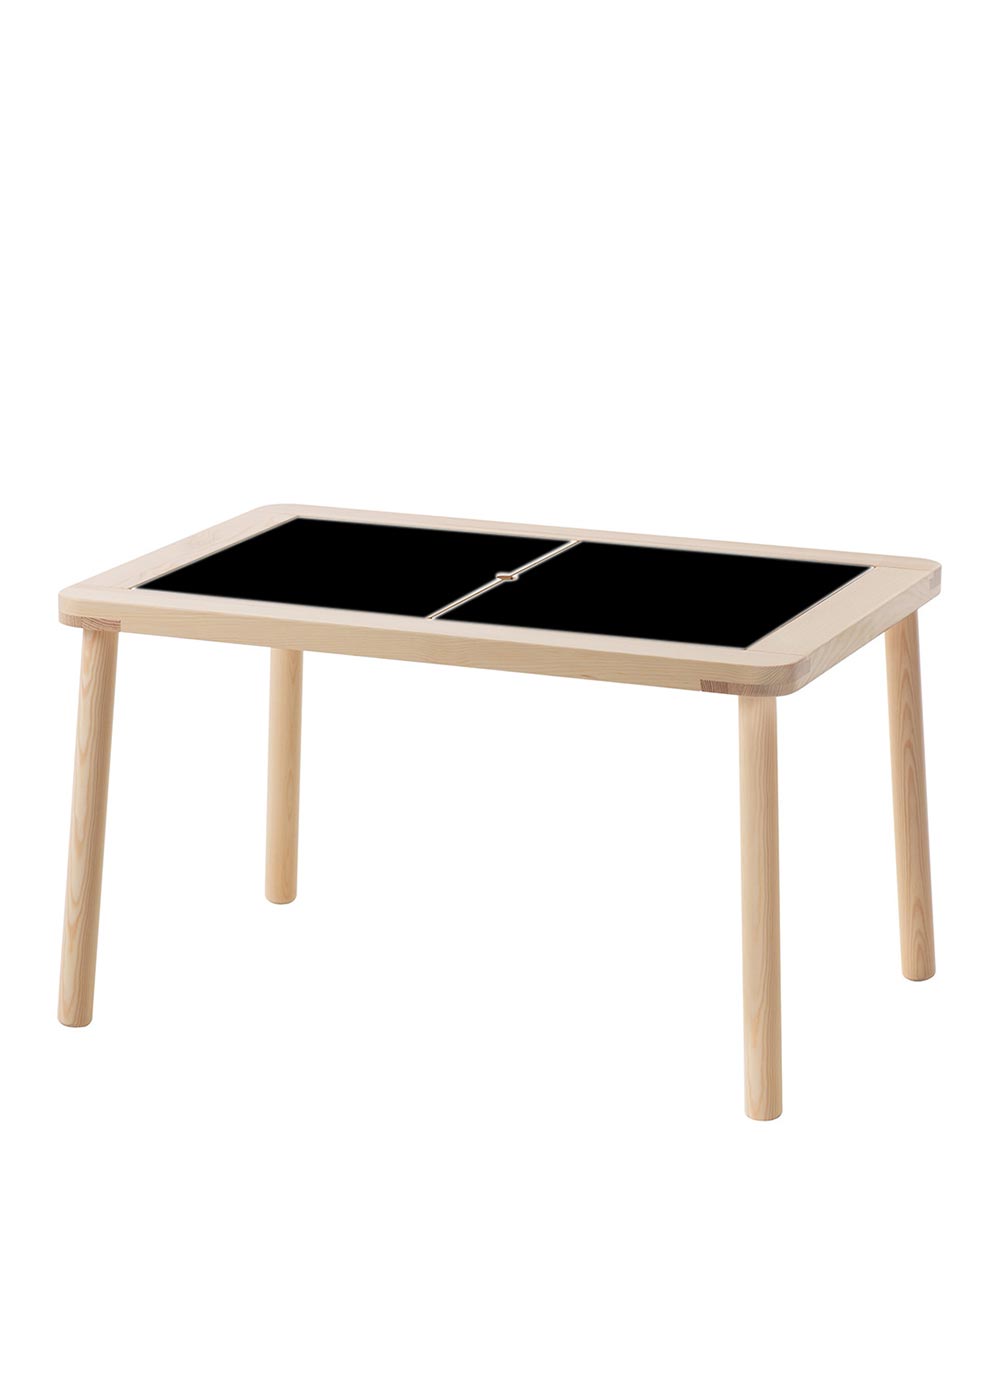 Ikea Flisat Spieltisch Ideenreich Tafelfolie  Gesamtansicht